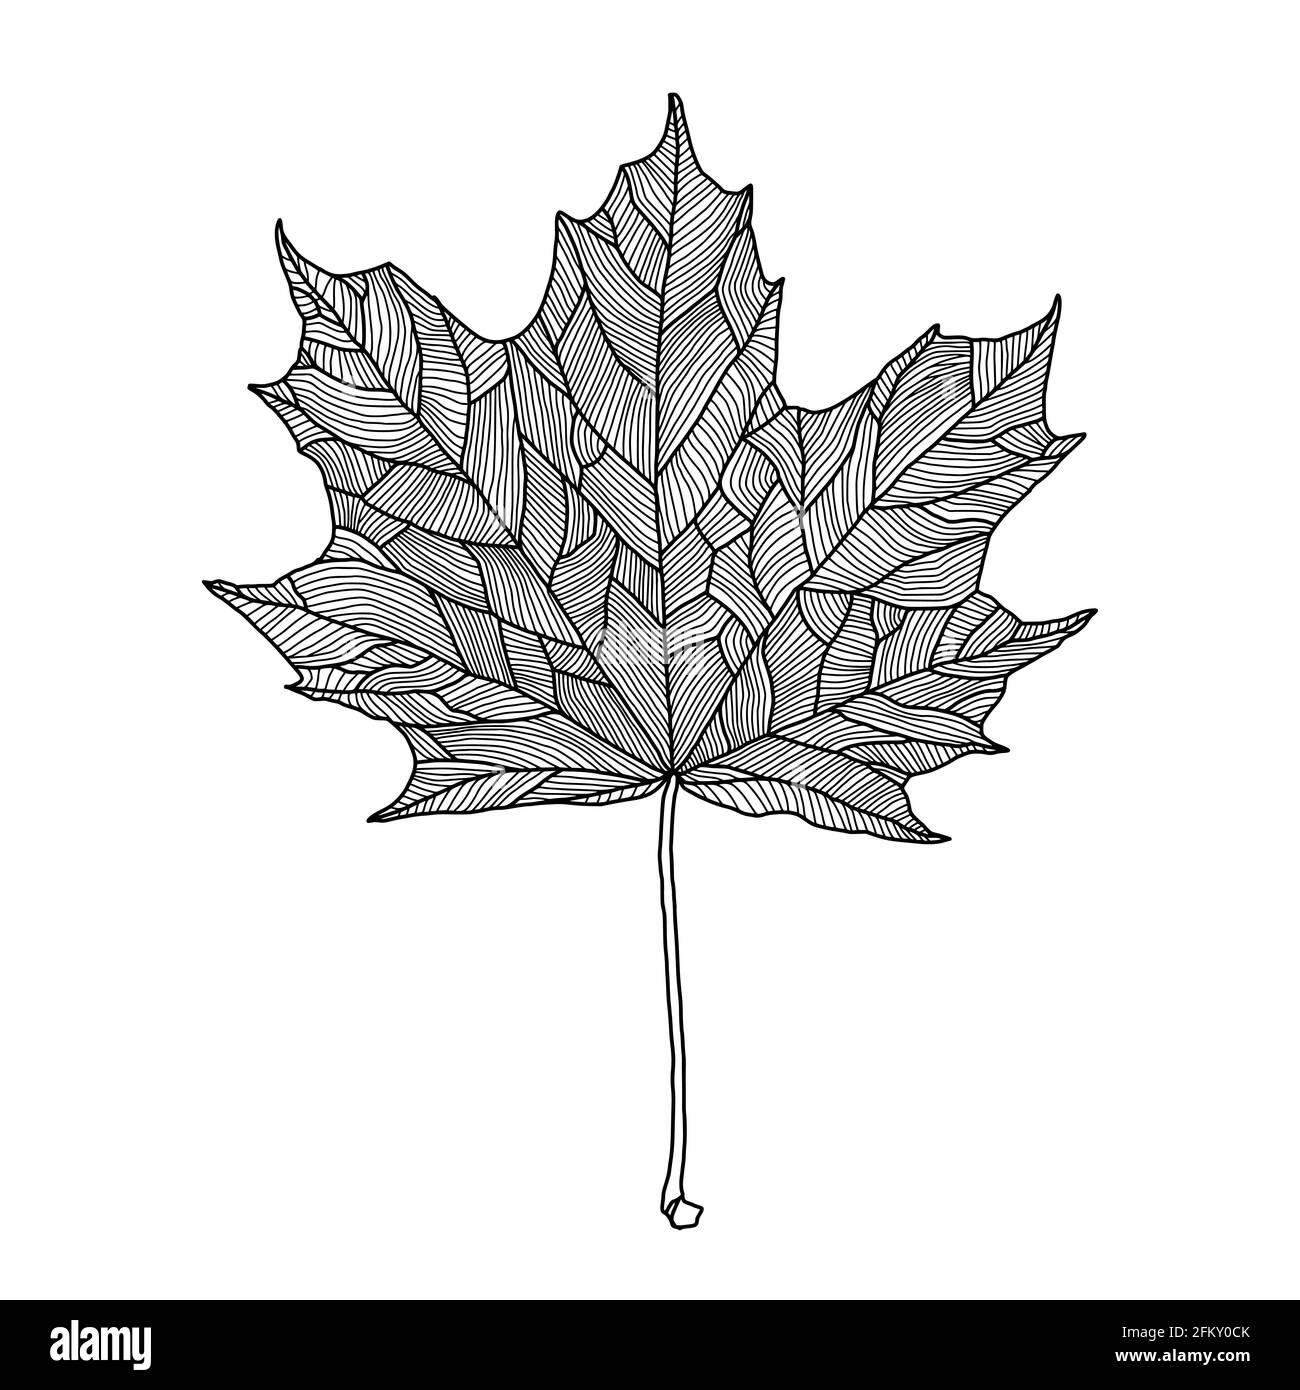 Red Maple Leaf White Transparent, Red Maple Leaf Skeleton Clip Art, Maple  Leaf, Red, Skeleton PNG Image For Free Download